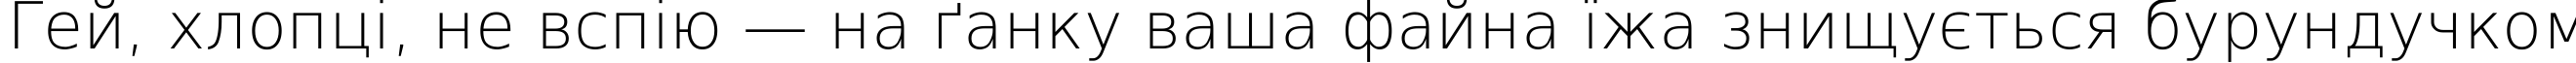 Пример написания шрифтом DejaVu Sans ExtraLight текста на украинском